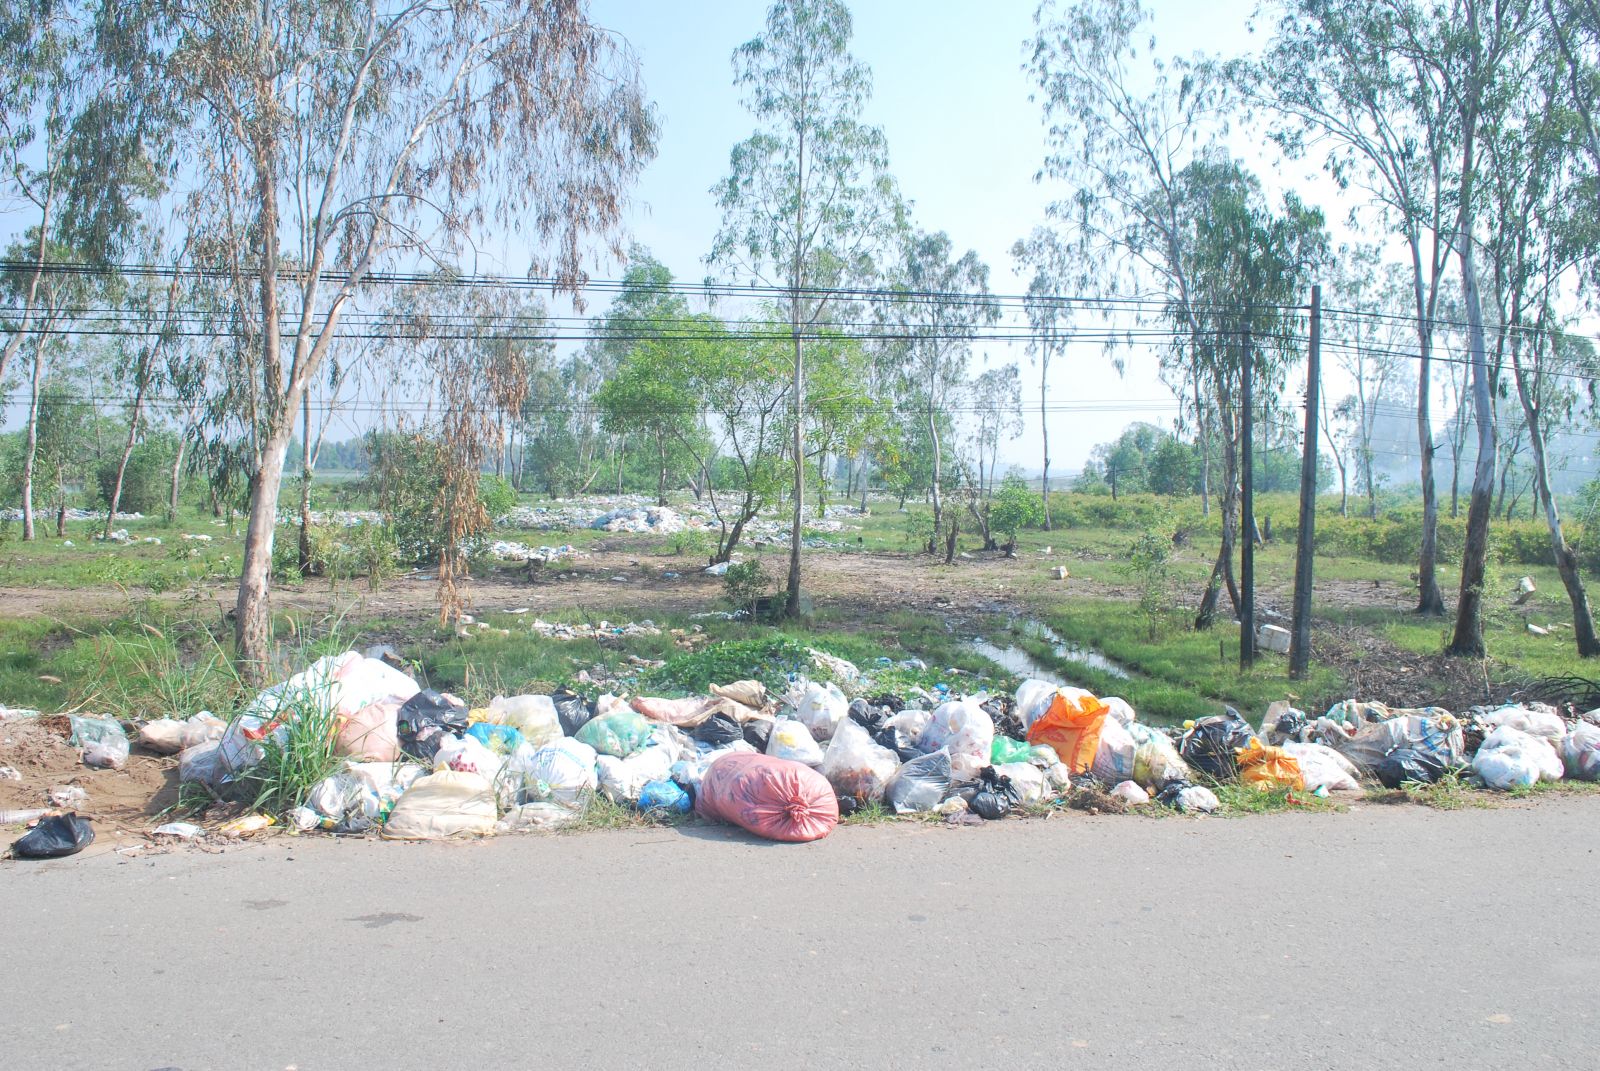 Hình ảnh vứt rác bừa bãi gây ô nhiễm môi trường